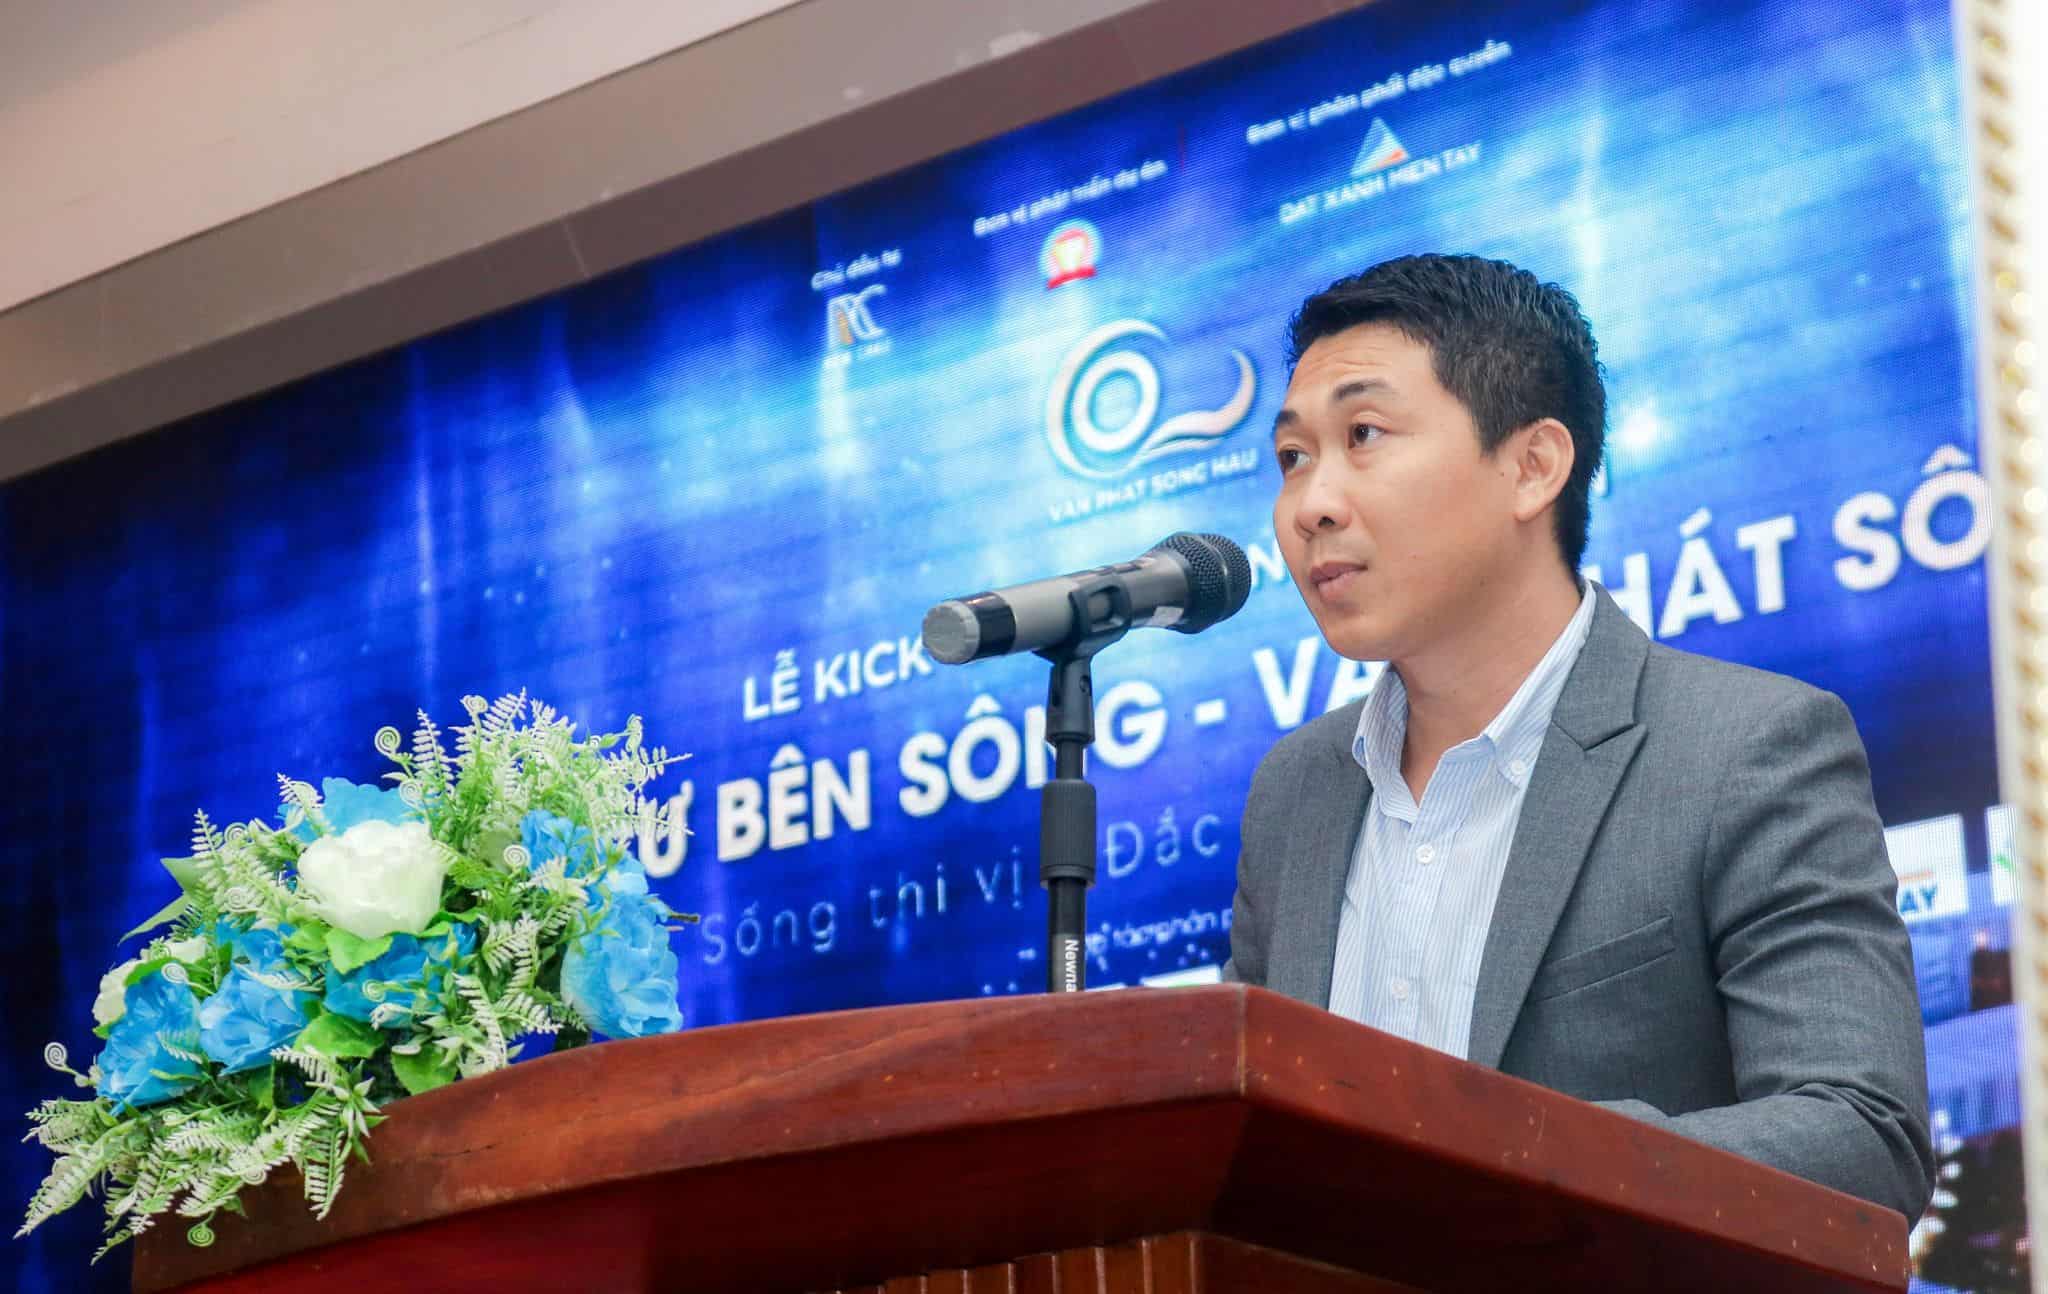 Ông. Ngô Hải Nam, đại diện đơn vị phát triển dự án - Công ty Vạn Phát phát biểu tại sự kiện